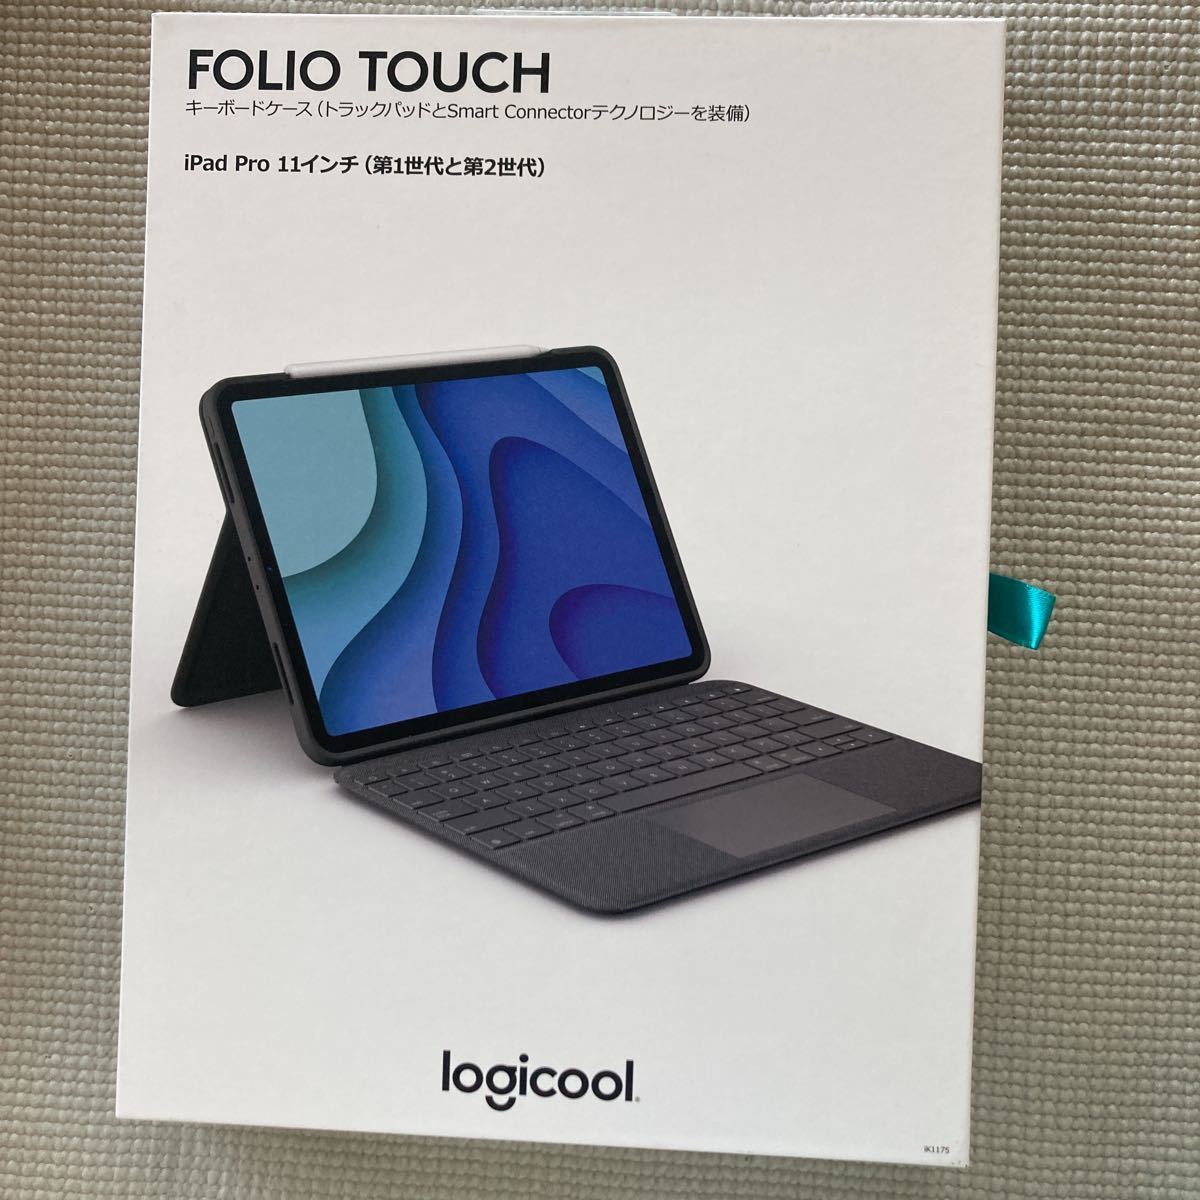 100%正規品 logicool FOLIO TOUCH iPad Pro 11インチ ロジクール 第1